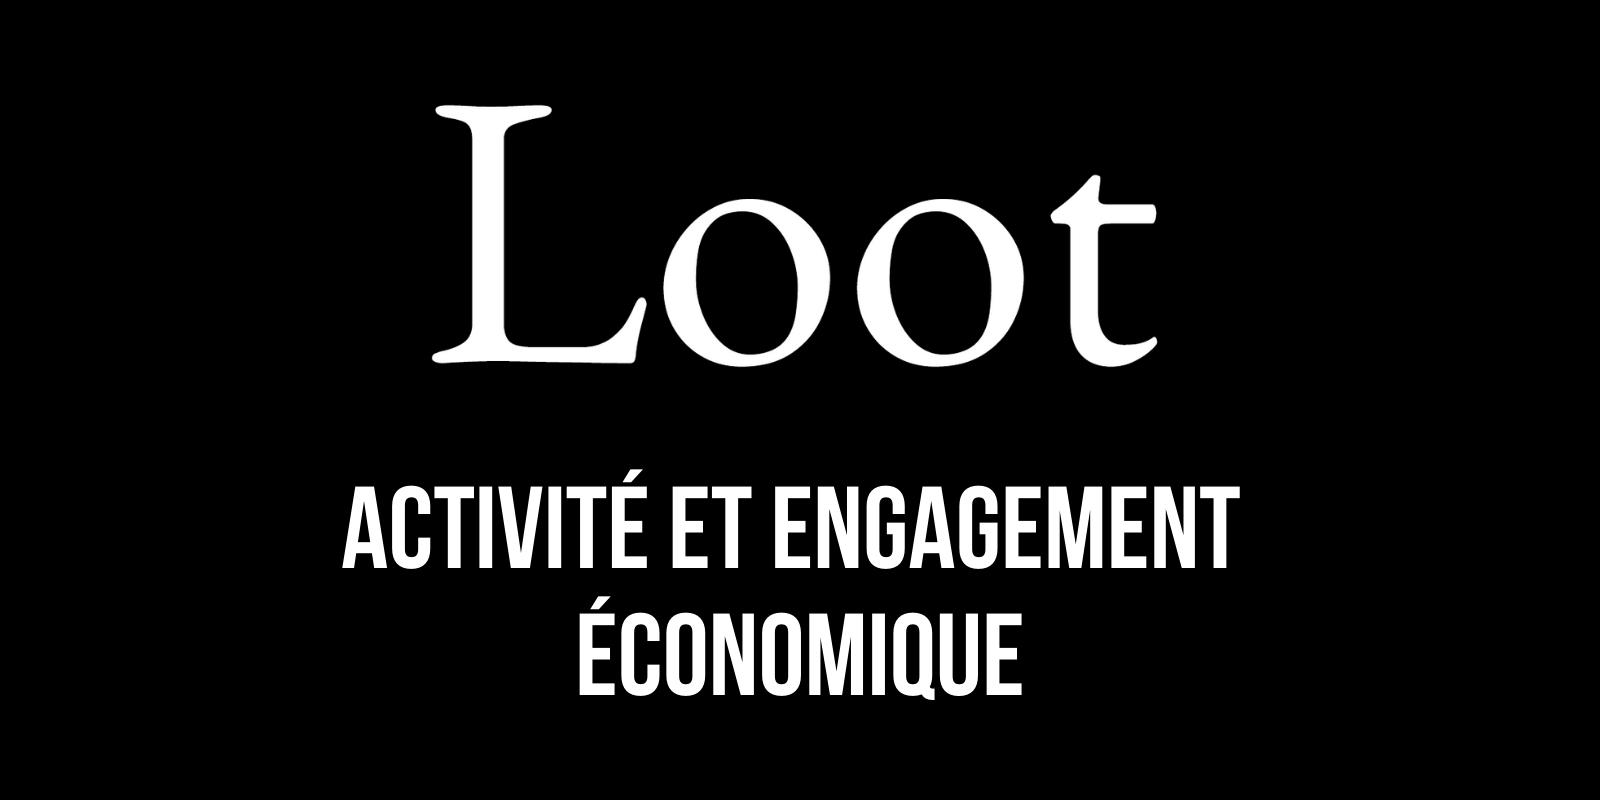 Loot (for Adventurers) – Activité et engagement économique du projet de NFTs